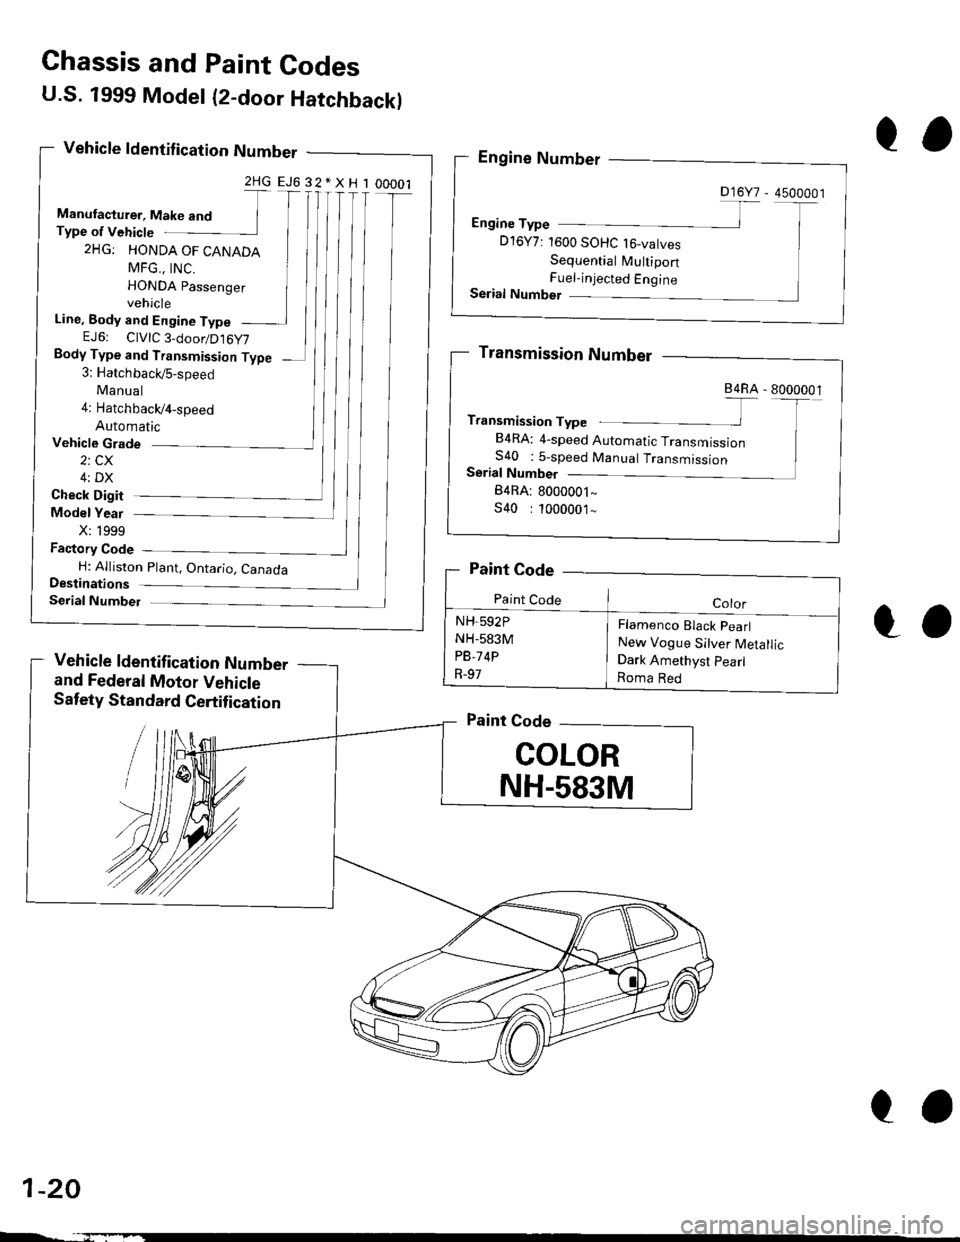 HONDA CIVIC 1996 6.G User Guide U.S. 1999 Model (2-door Hatchbackl
Vehicle ldentif ication Number
2HGEJ632*XH100001
Manufacturer, Make and TType of Vehicte
2HG: HONDA OF CANADA
MFG.. tNC. IHONDA passenger Ivehicle
Line, Body and Eng